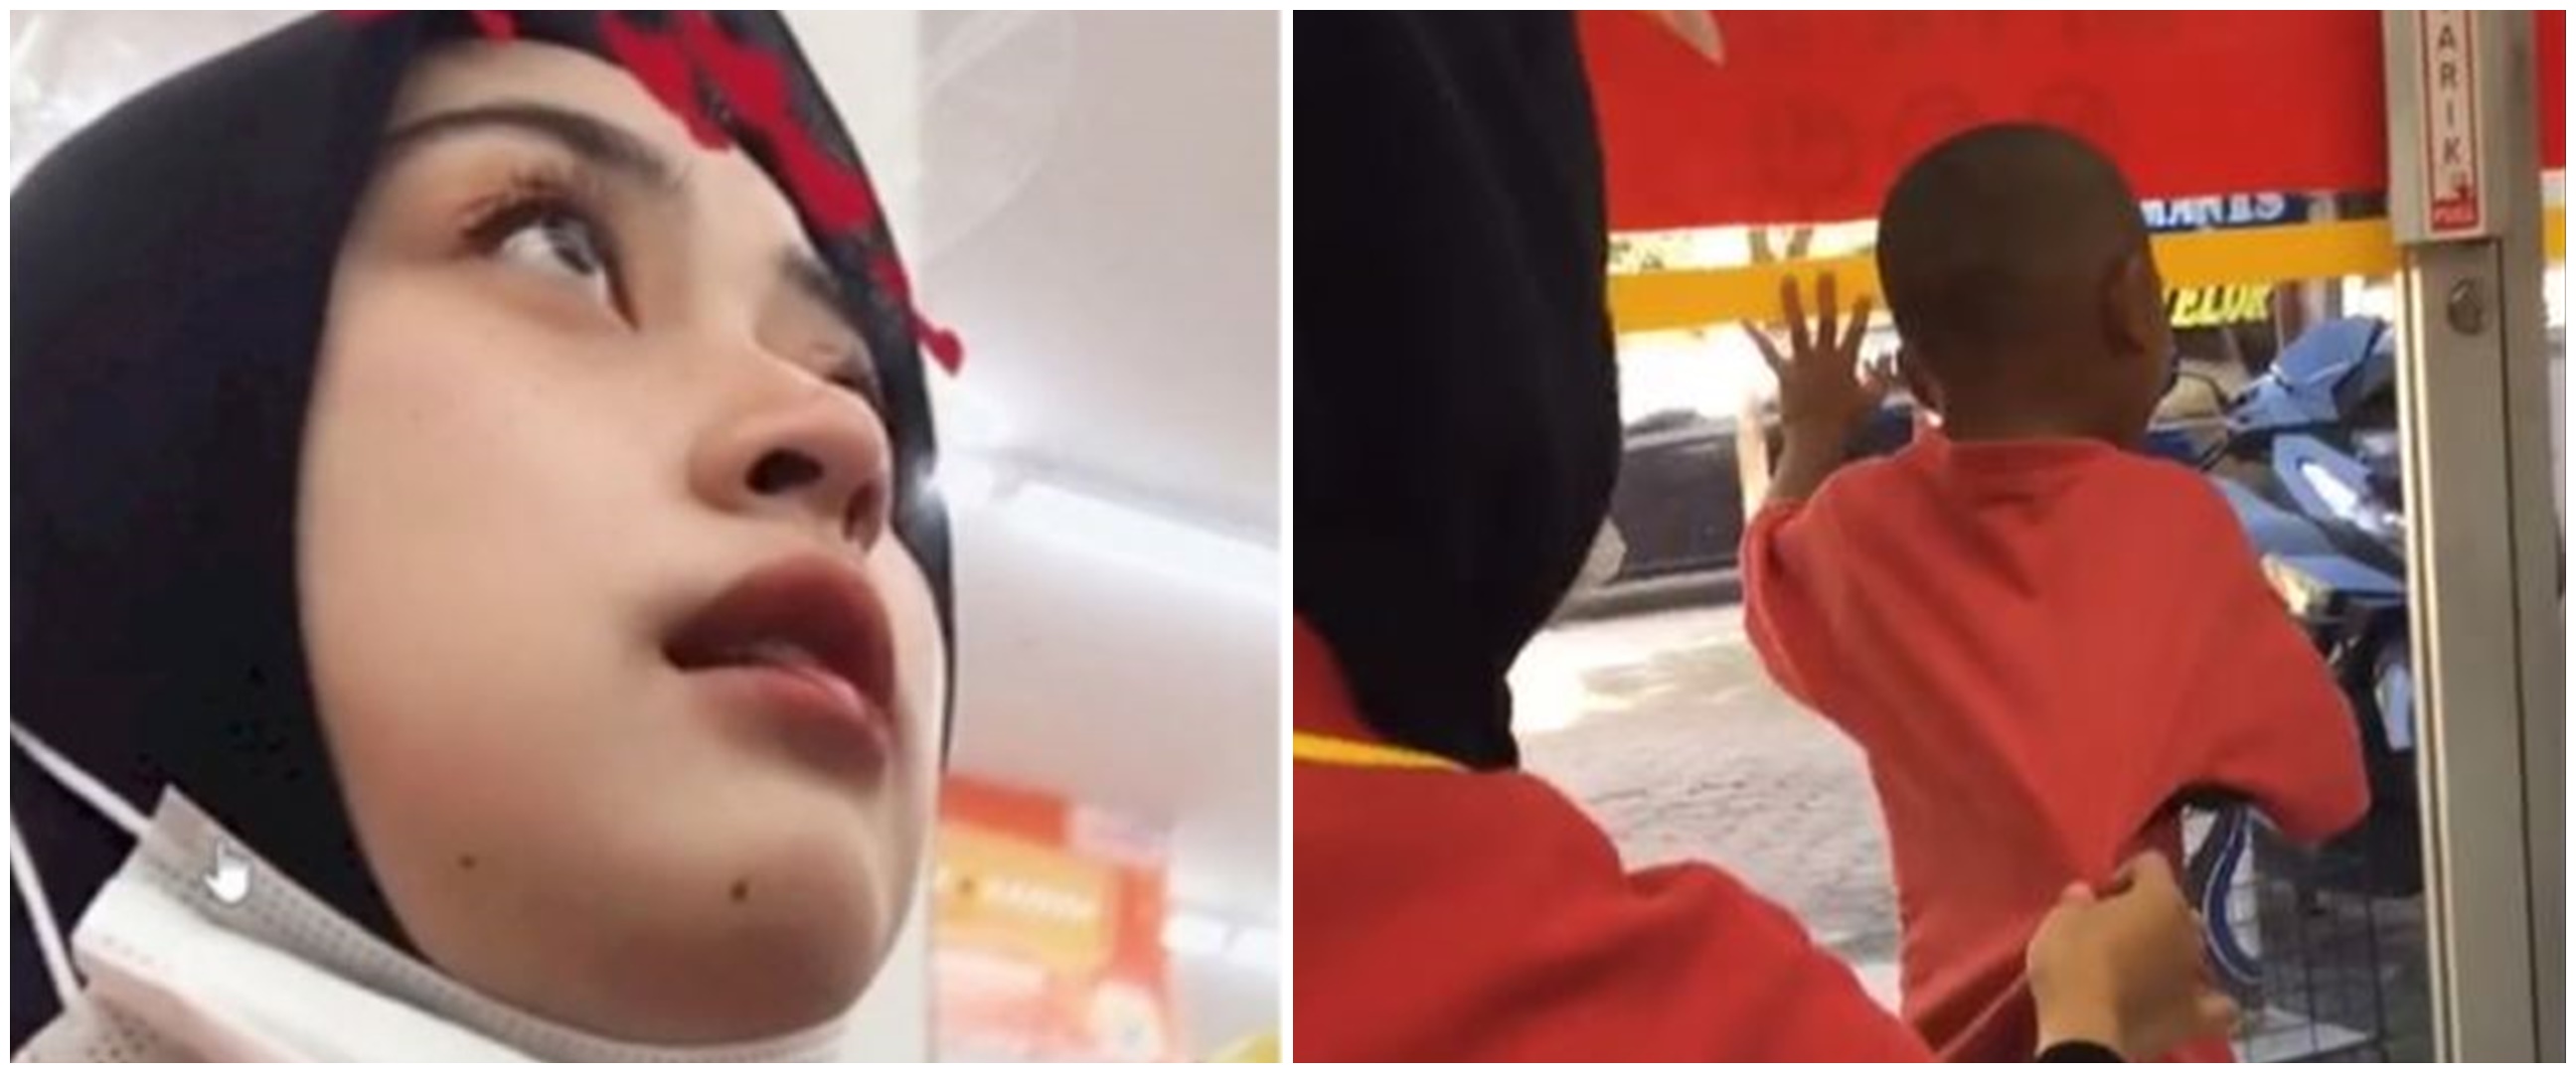 Viral aksi kasir cantik bersihkan wajah dua bocah, reaksinya gemesin